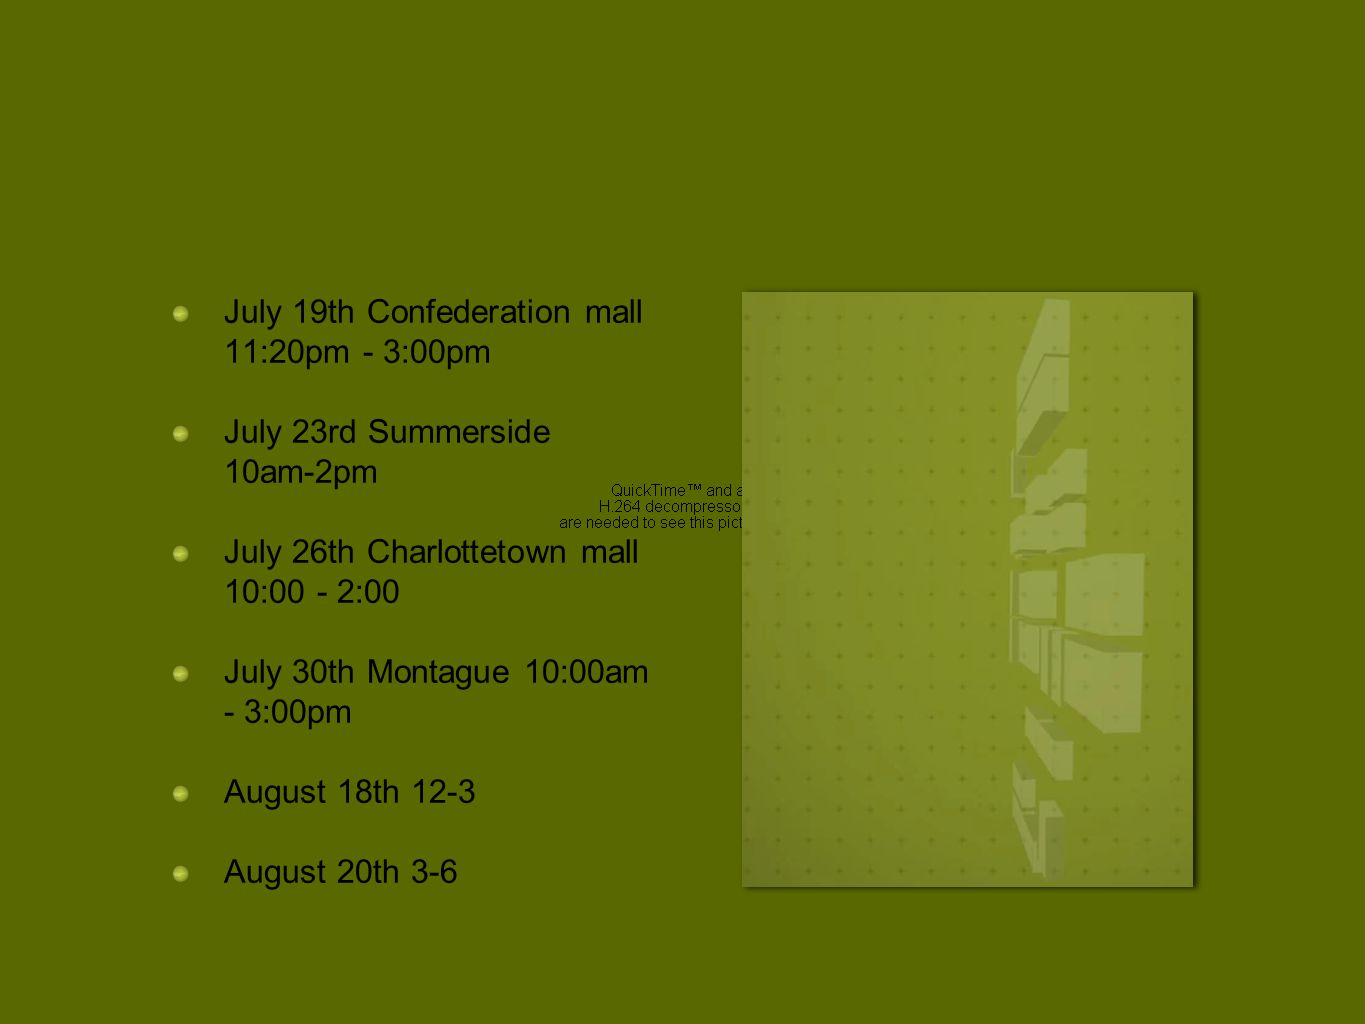 July 19th Confederation mall 11:20pm - 3:00pm